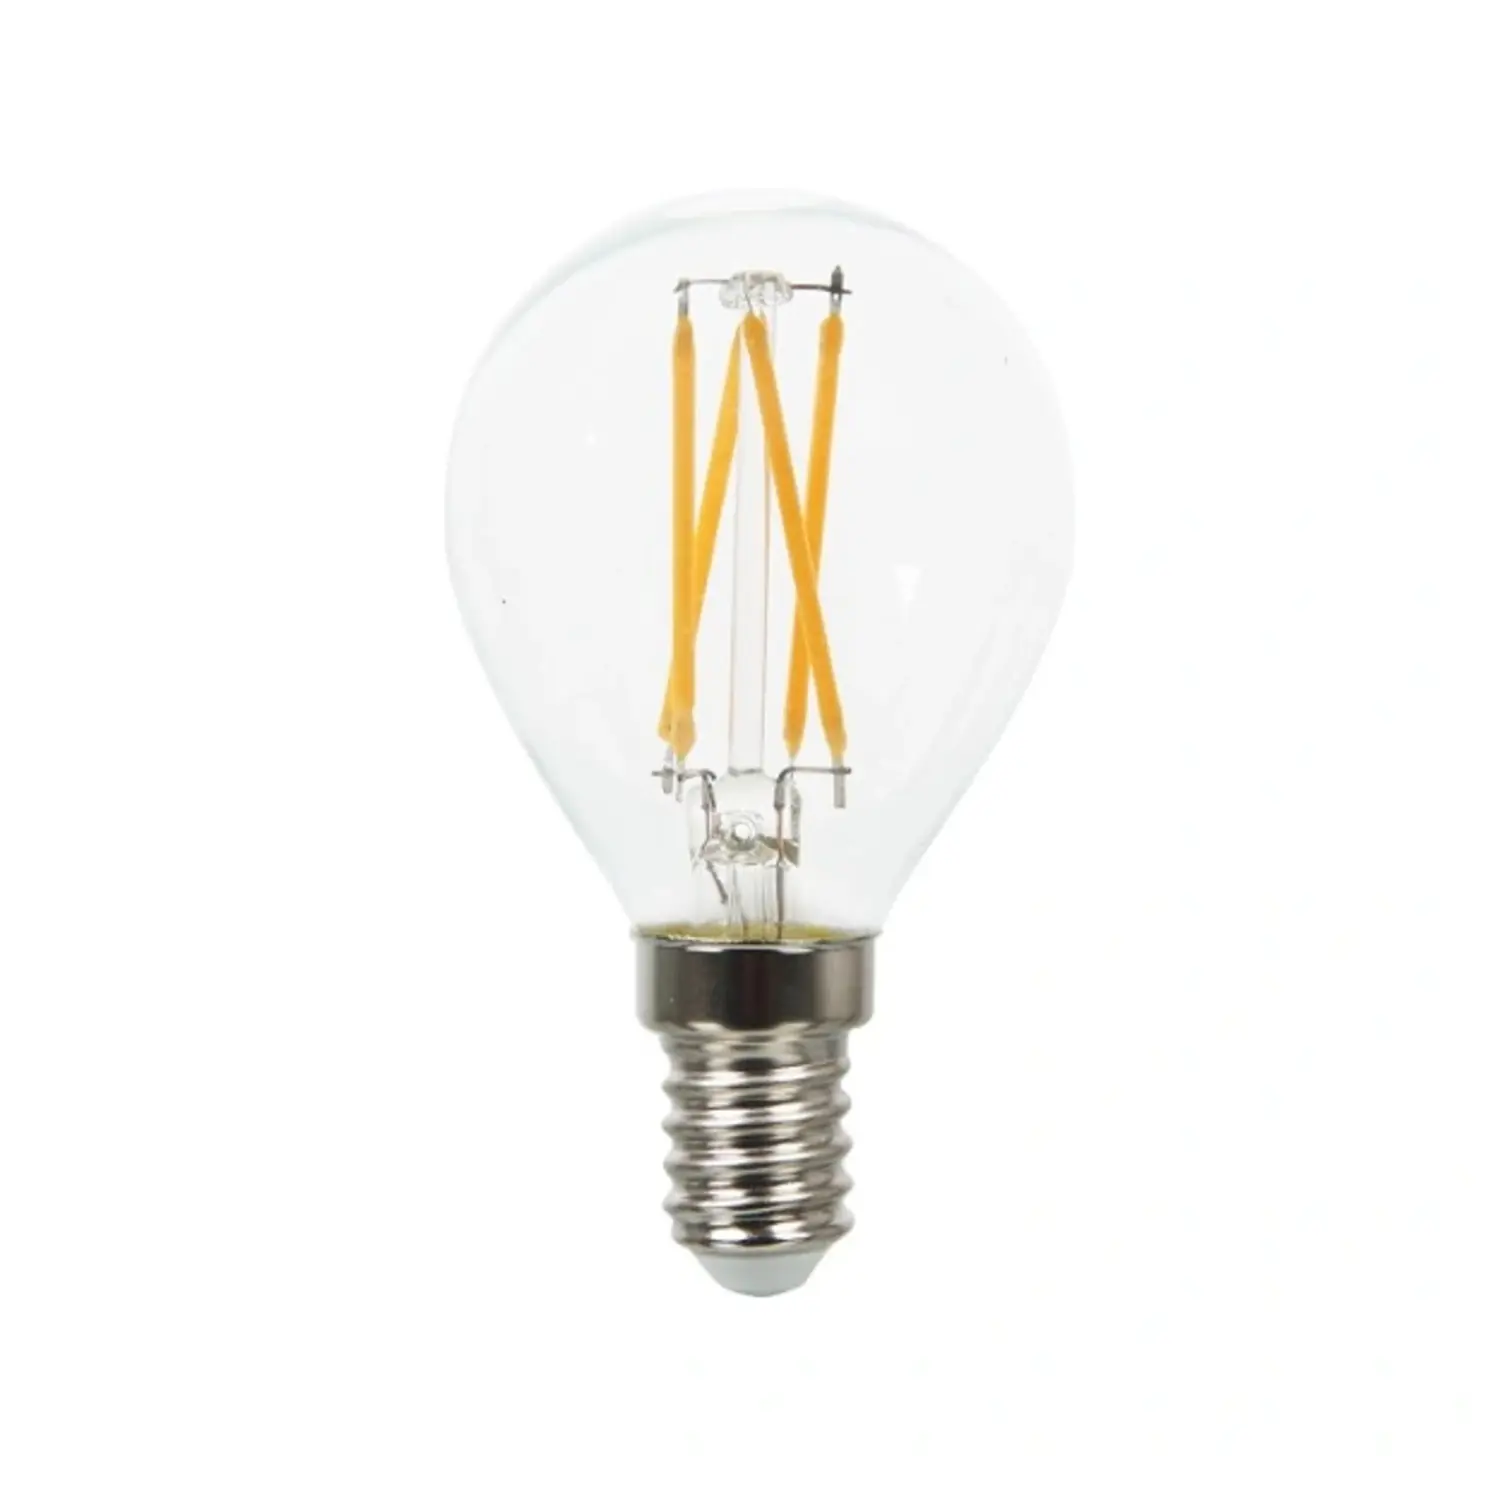 immagine del prodotto lampadina filo led vetro trasparente 4 watt bianco caldo